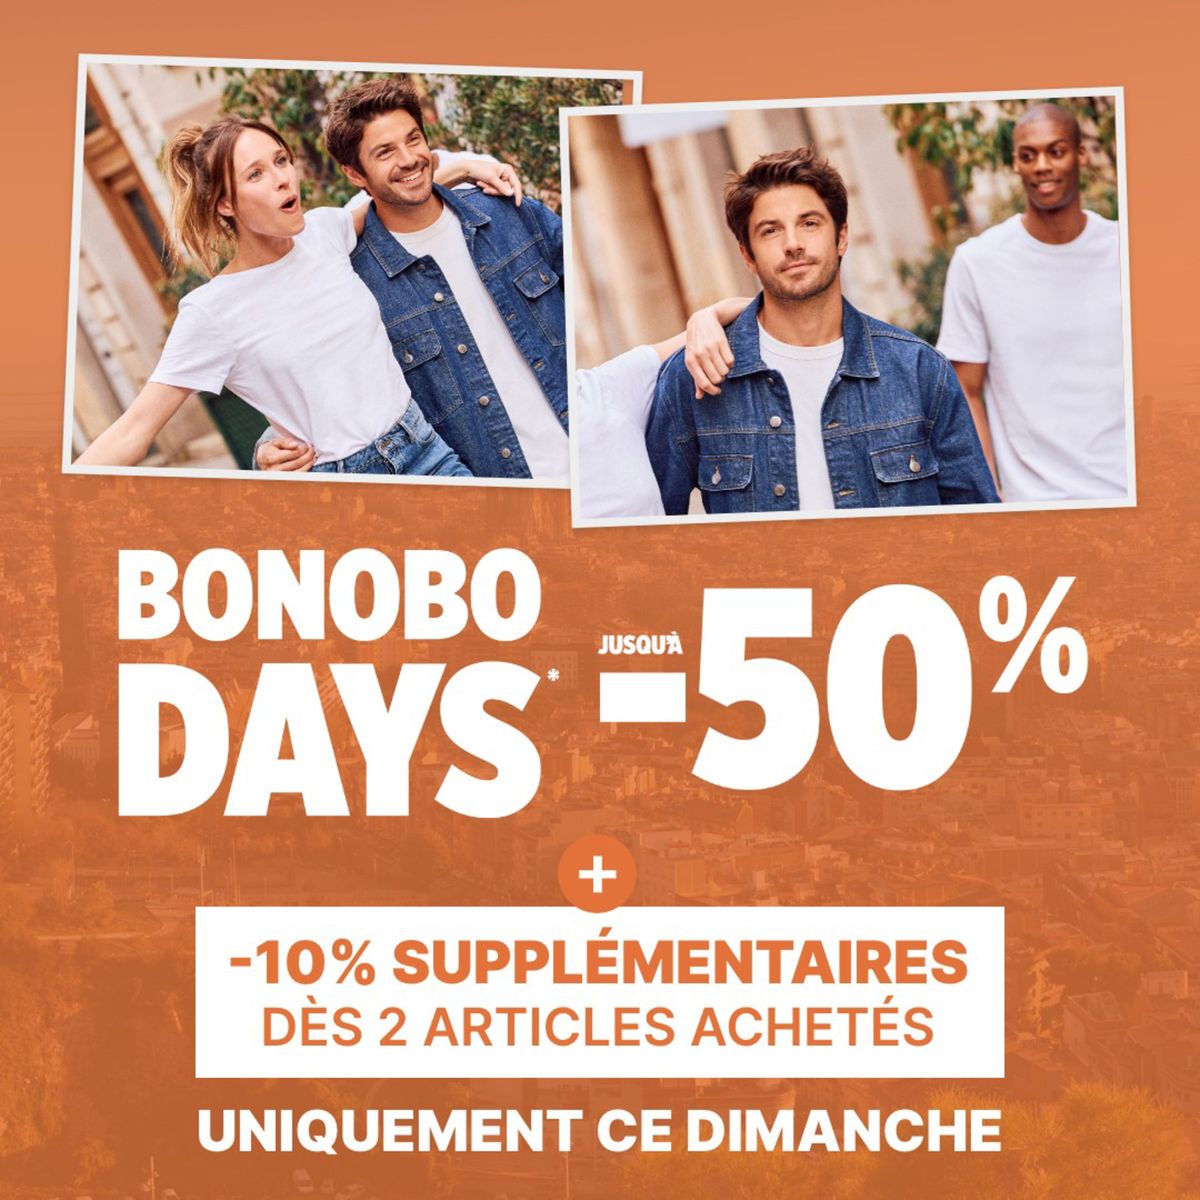 Catalogue -10% supplémentaires dès 2 articles achetés sur la sélection Bonobo Days, page 00001